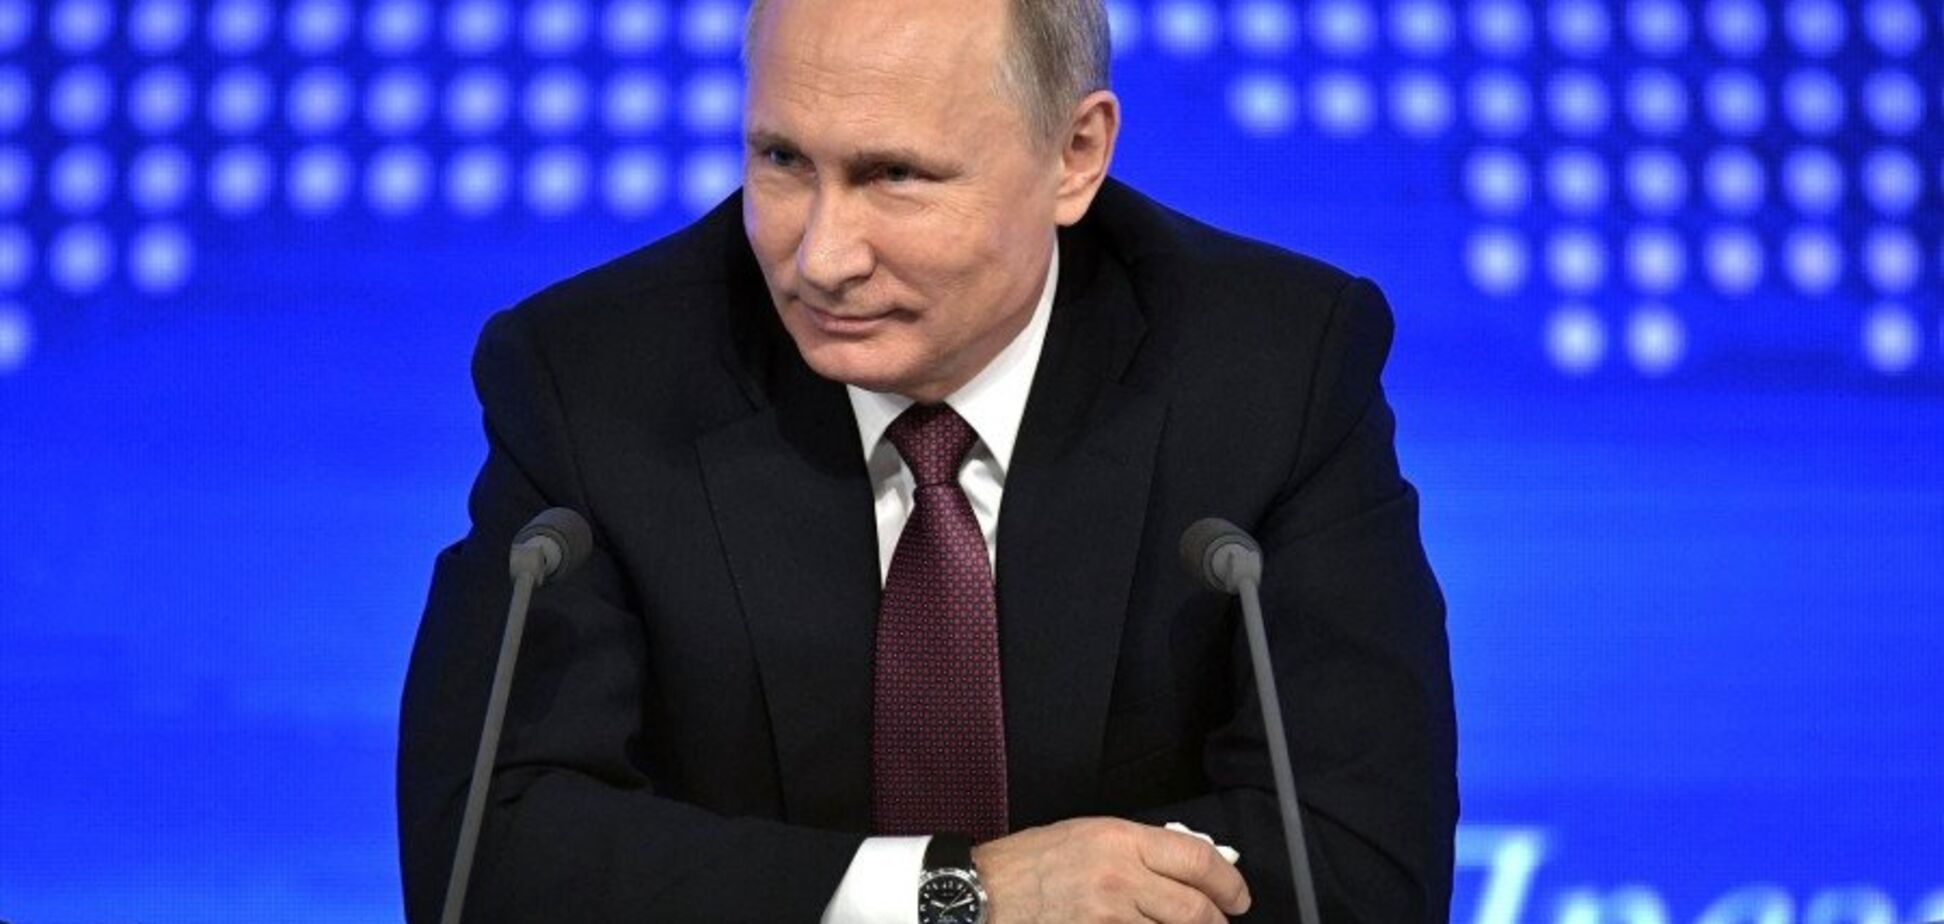 ''Как у психиатра'': сеть взорвалась шутками о пресс-конференции Путина